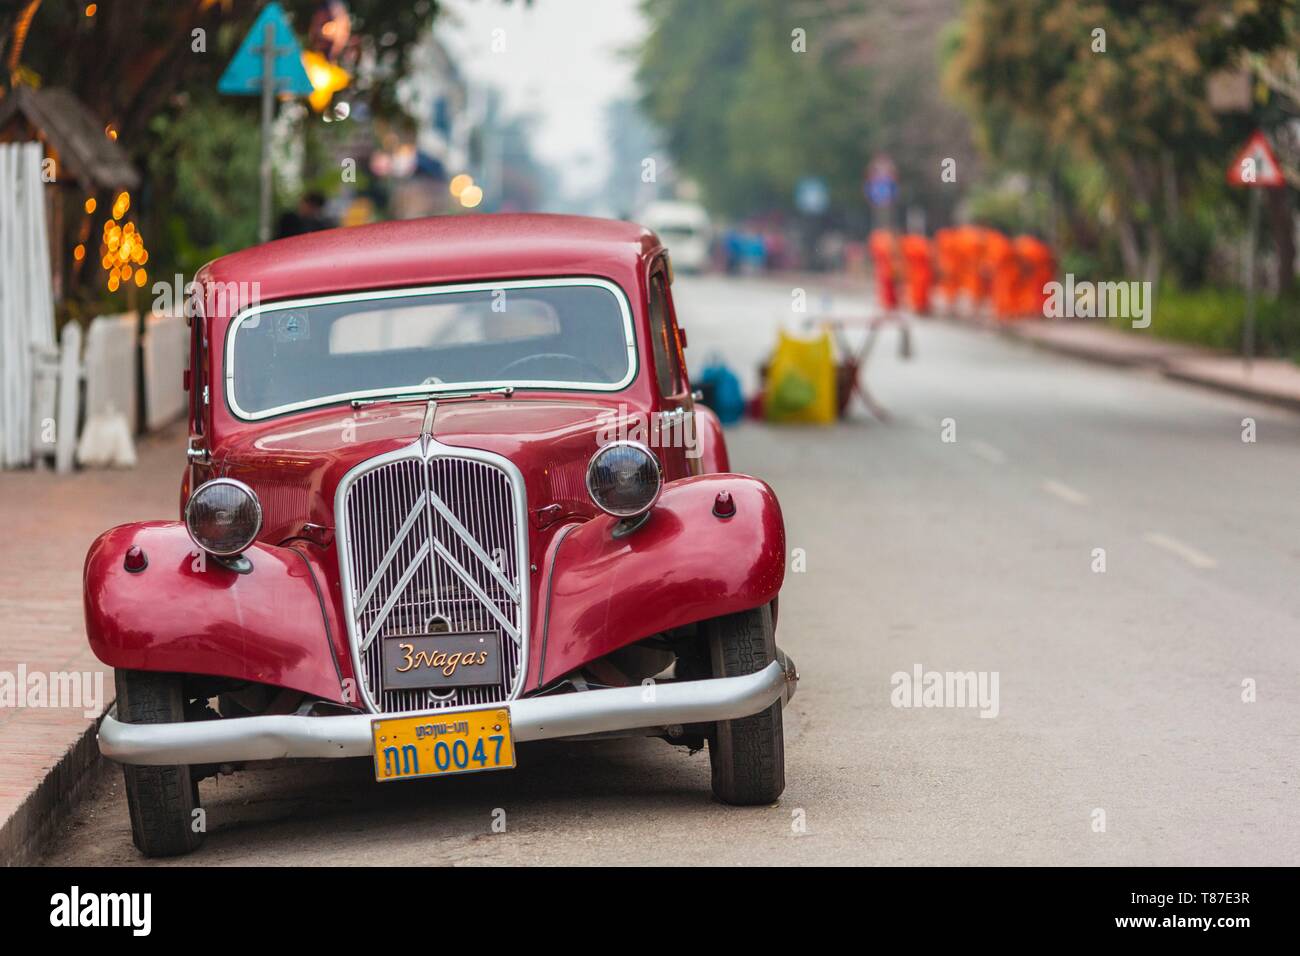 Laos, Luang Prabang, Sisavangvong Carretera, época de 1950 vintage francés Citroën Traction Avant car Foto de stock